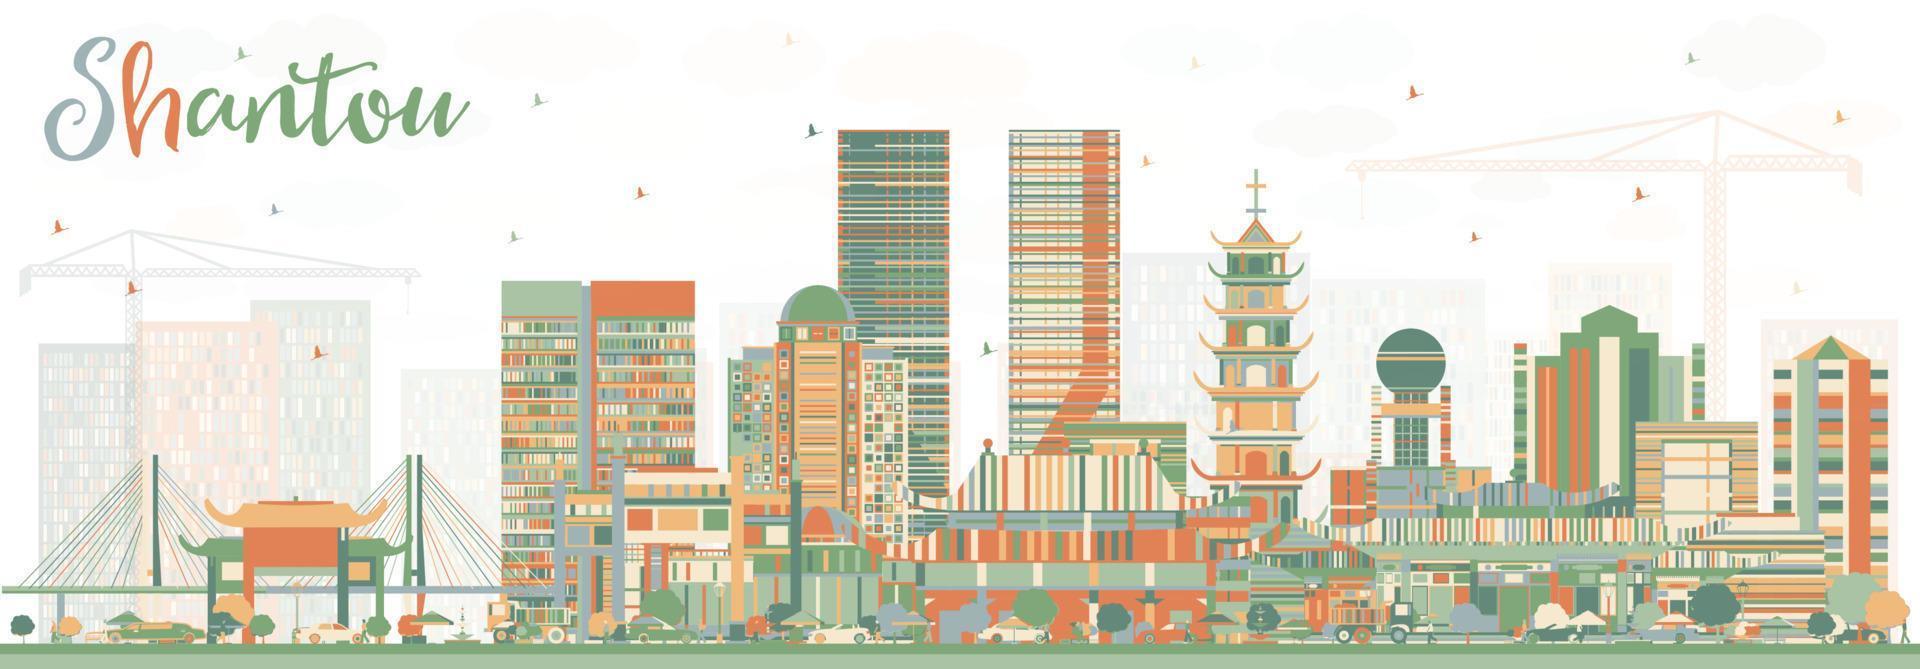 skyline de shantou china avec des bâtiments de couleur. vecteur